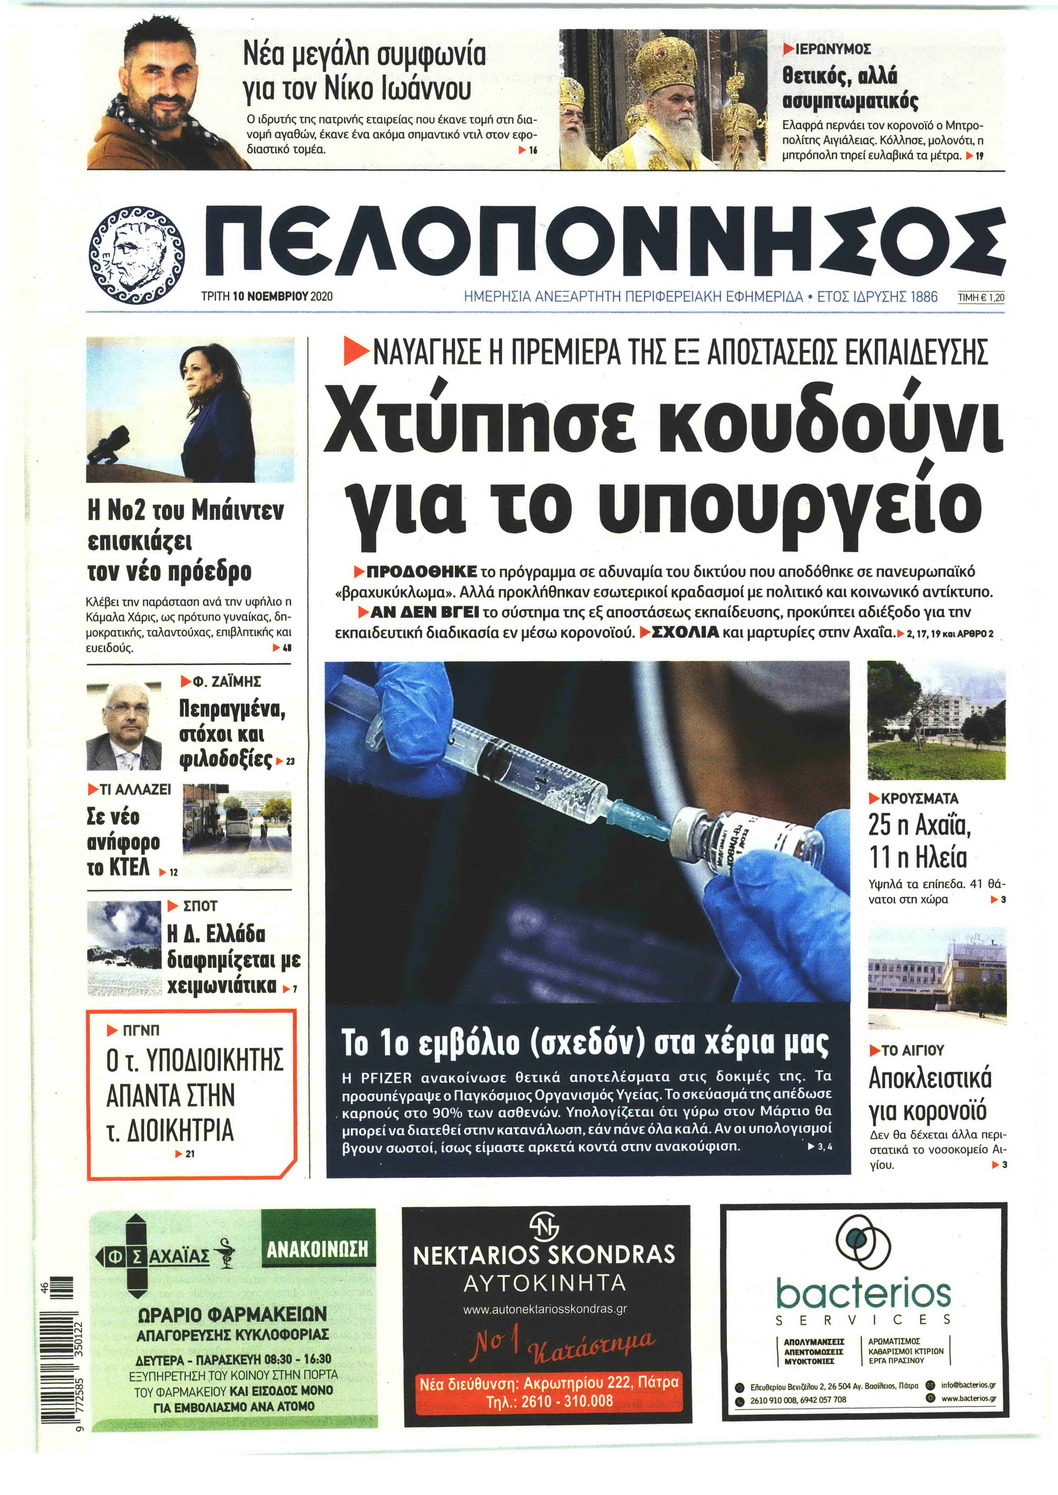 Πρωτοσέλιδο εφημερίδας Πελοπόννησος